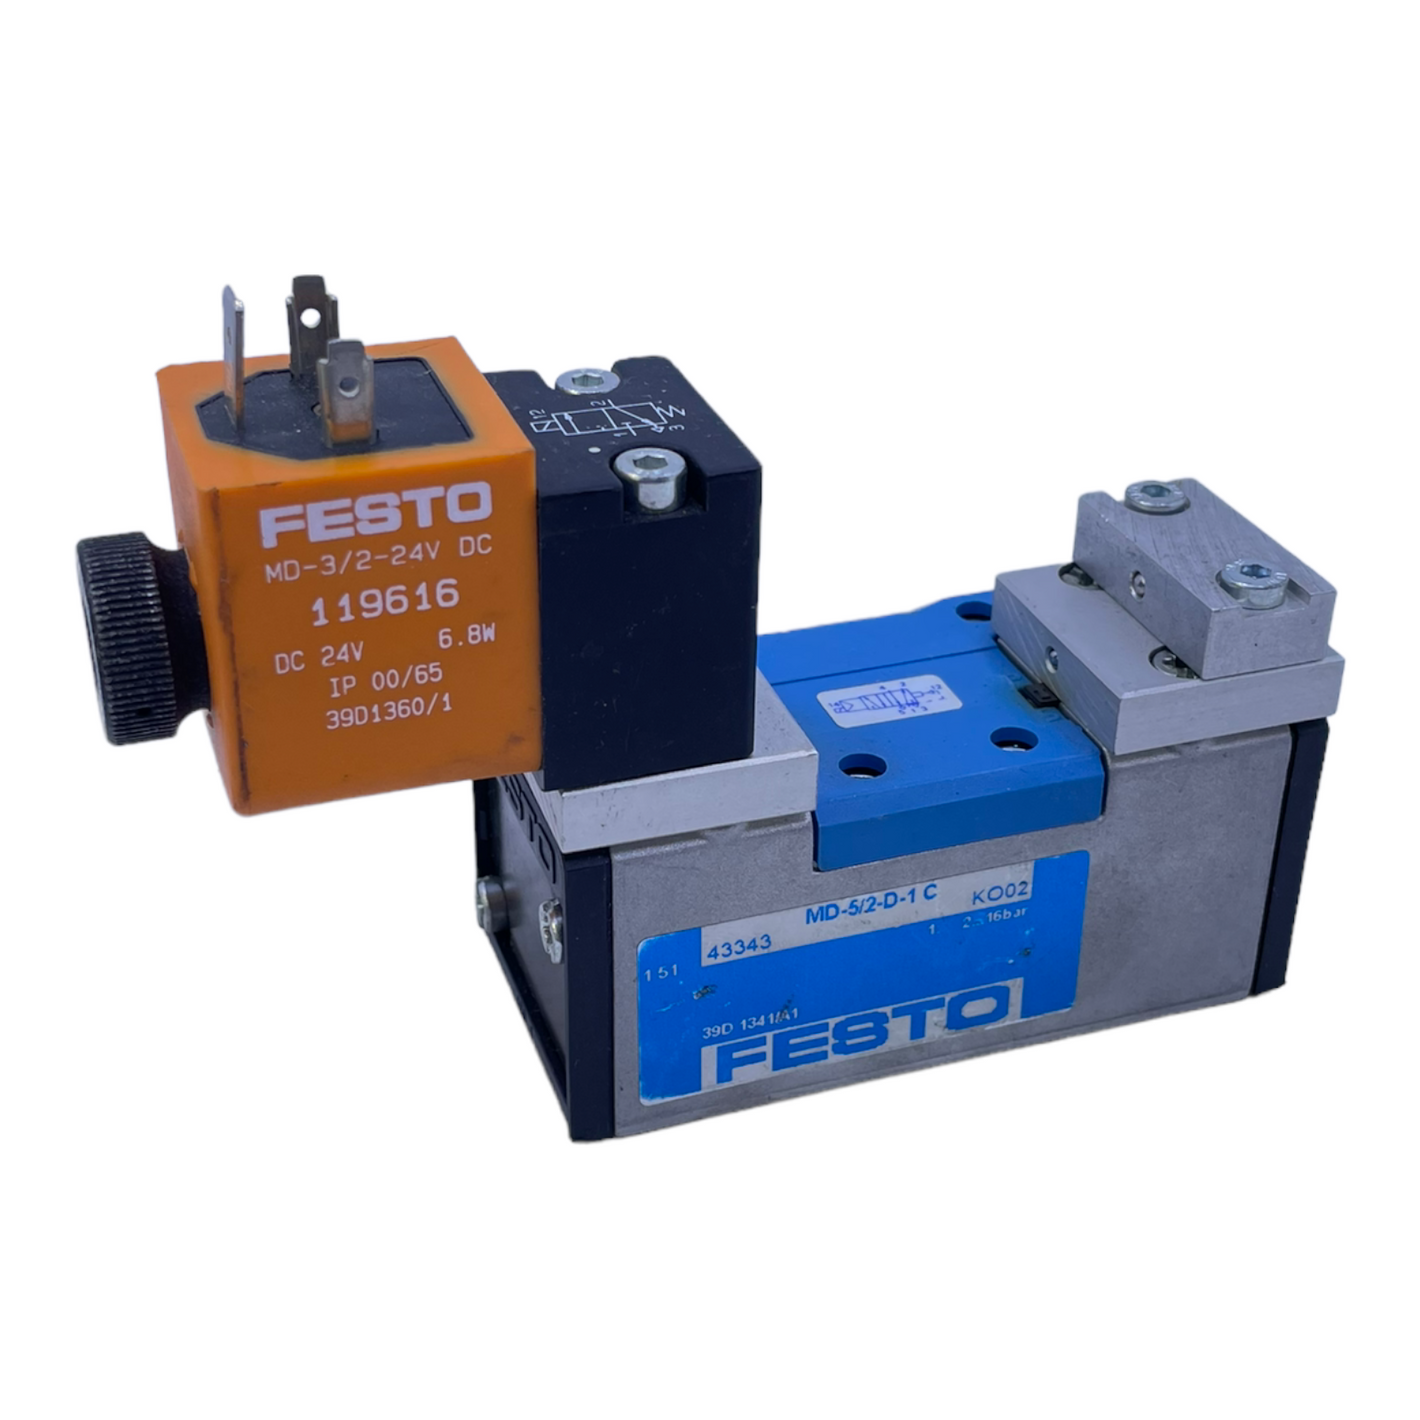 Festo MD-5/2-D-1-C solenoid valve 43343 2...16bar MD-3/2-24V DC 119616 DC24V 6.8W 